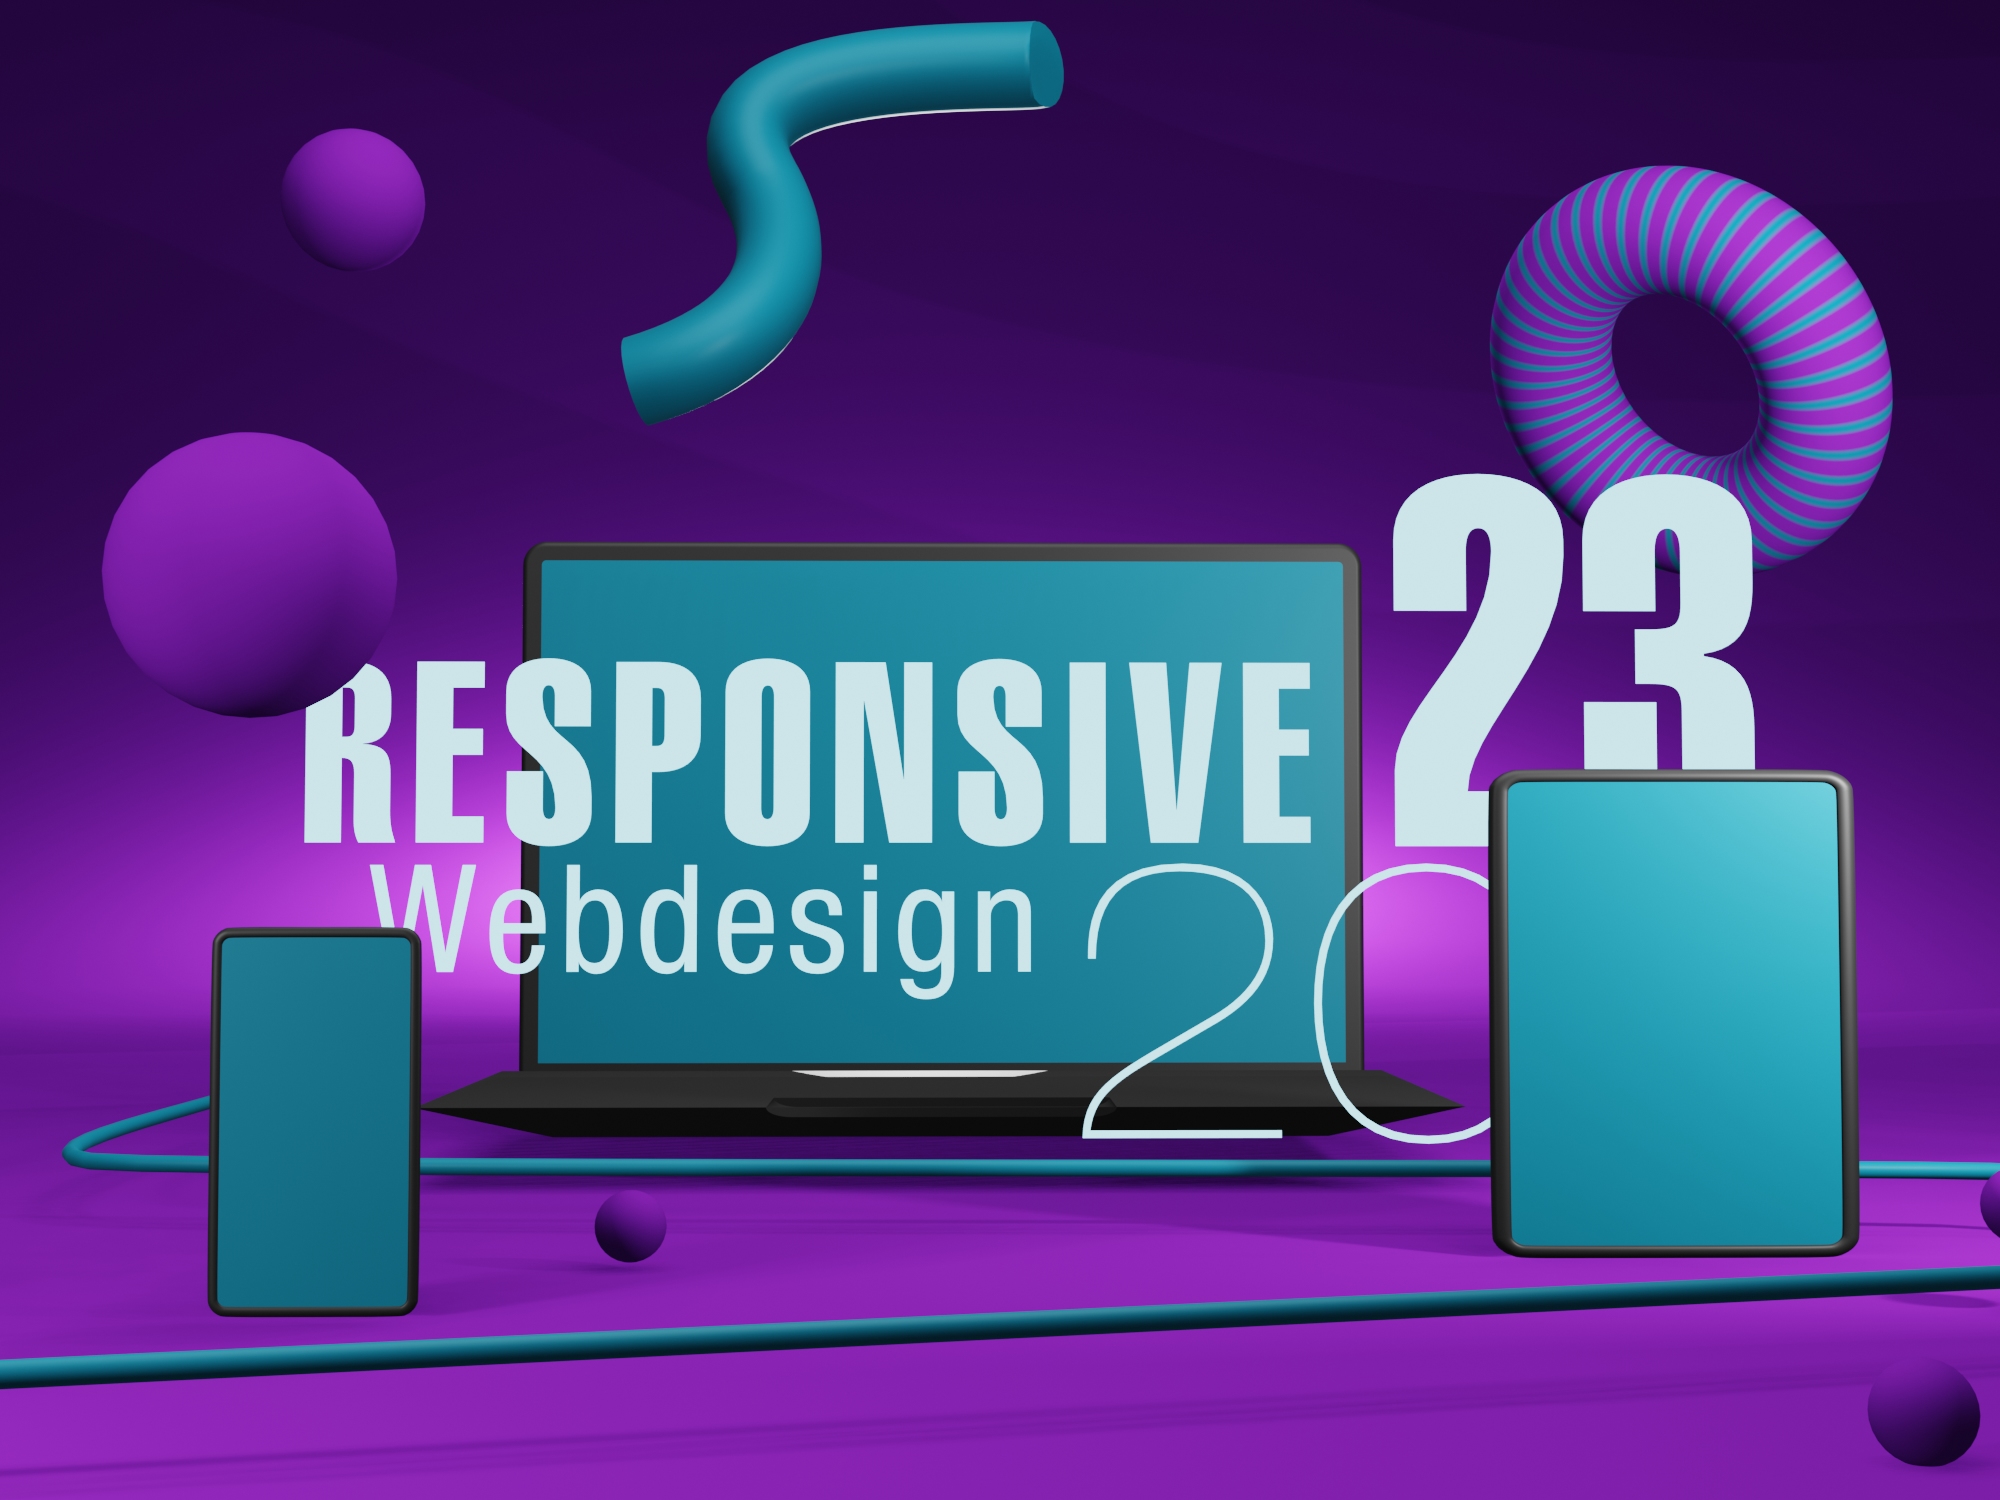 Responsive Webdesign Startbild 3d Illustration 2023